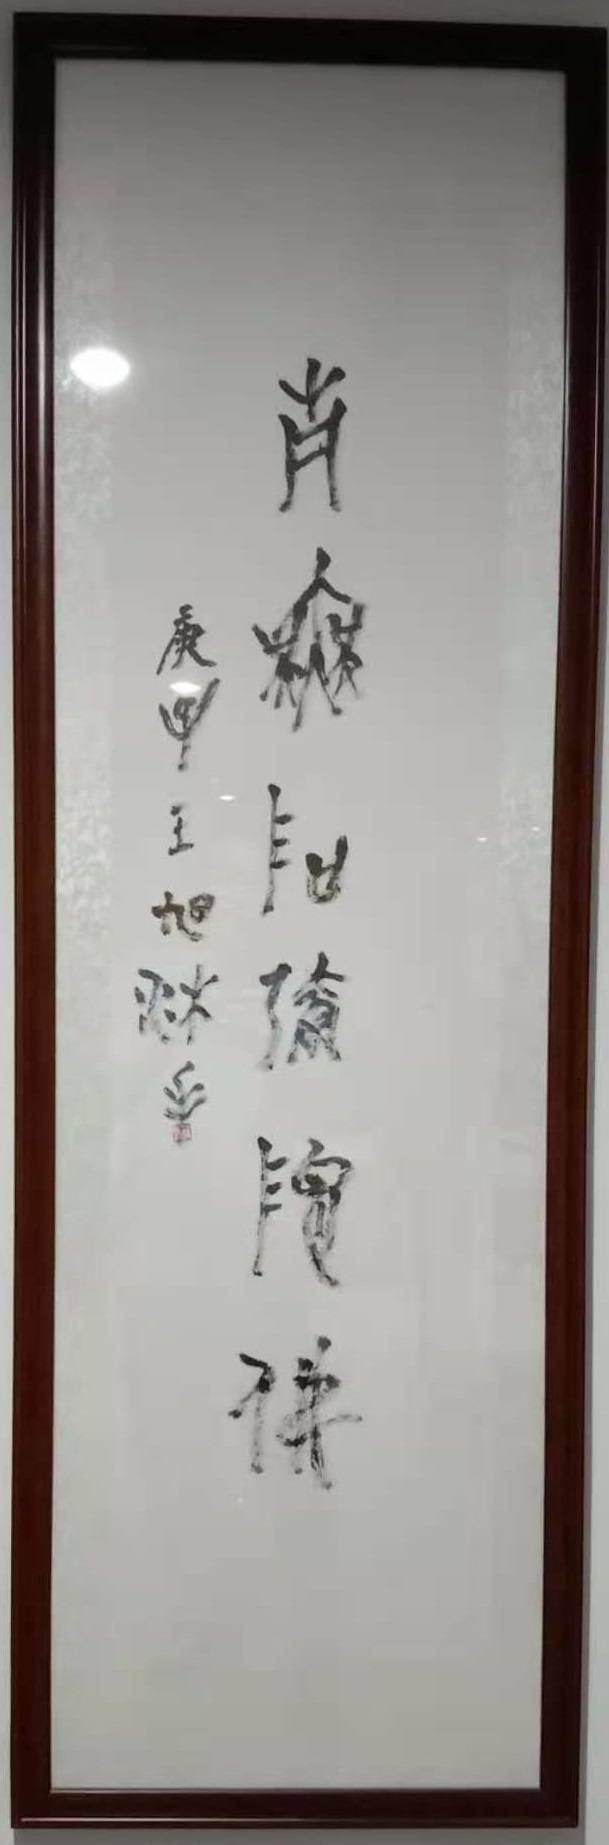 《你要知道的一位中国画家崔如琢评传》书法题签